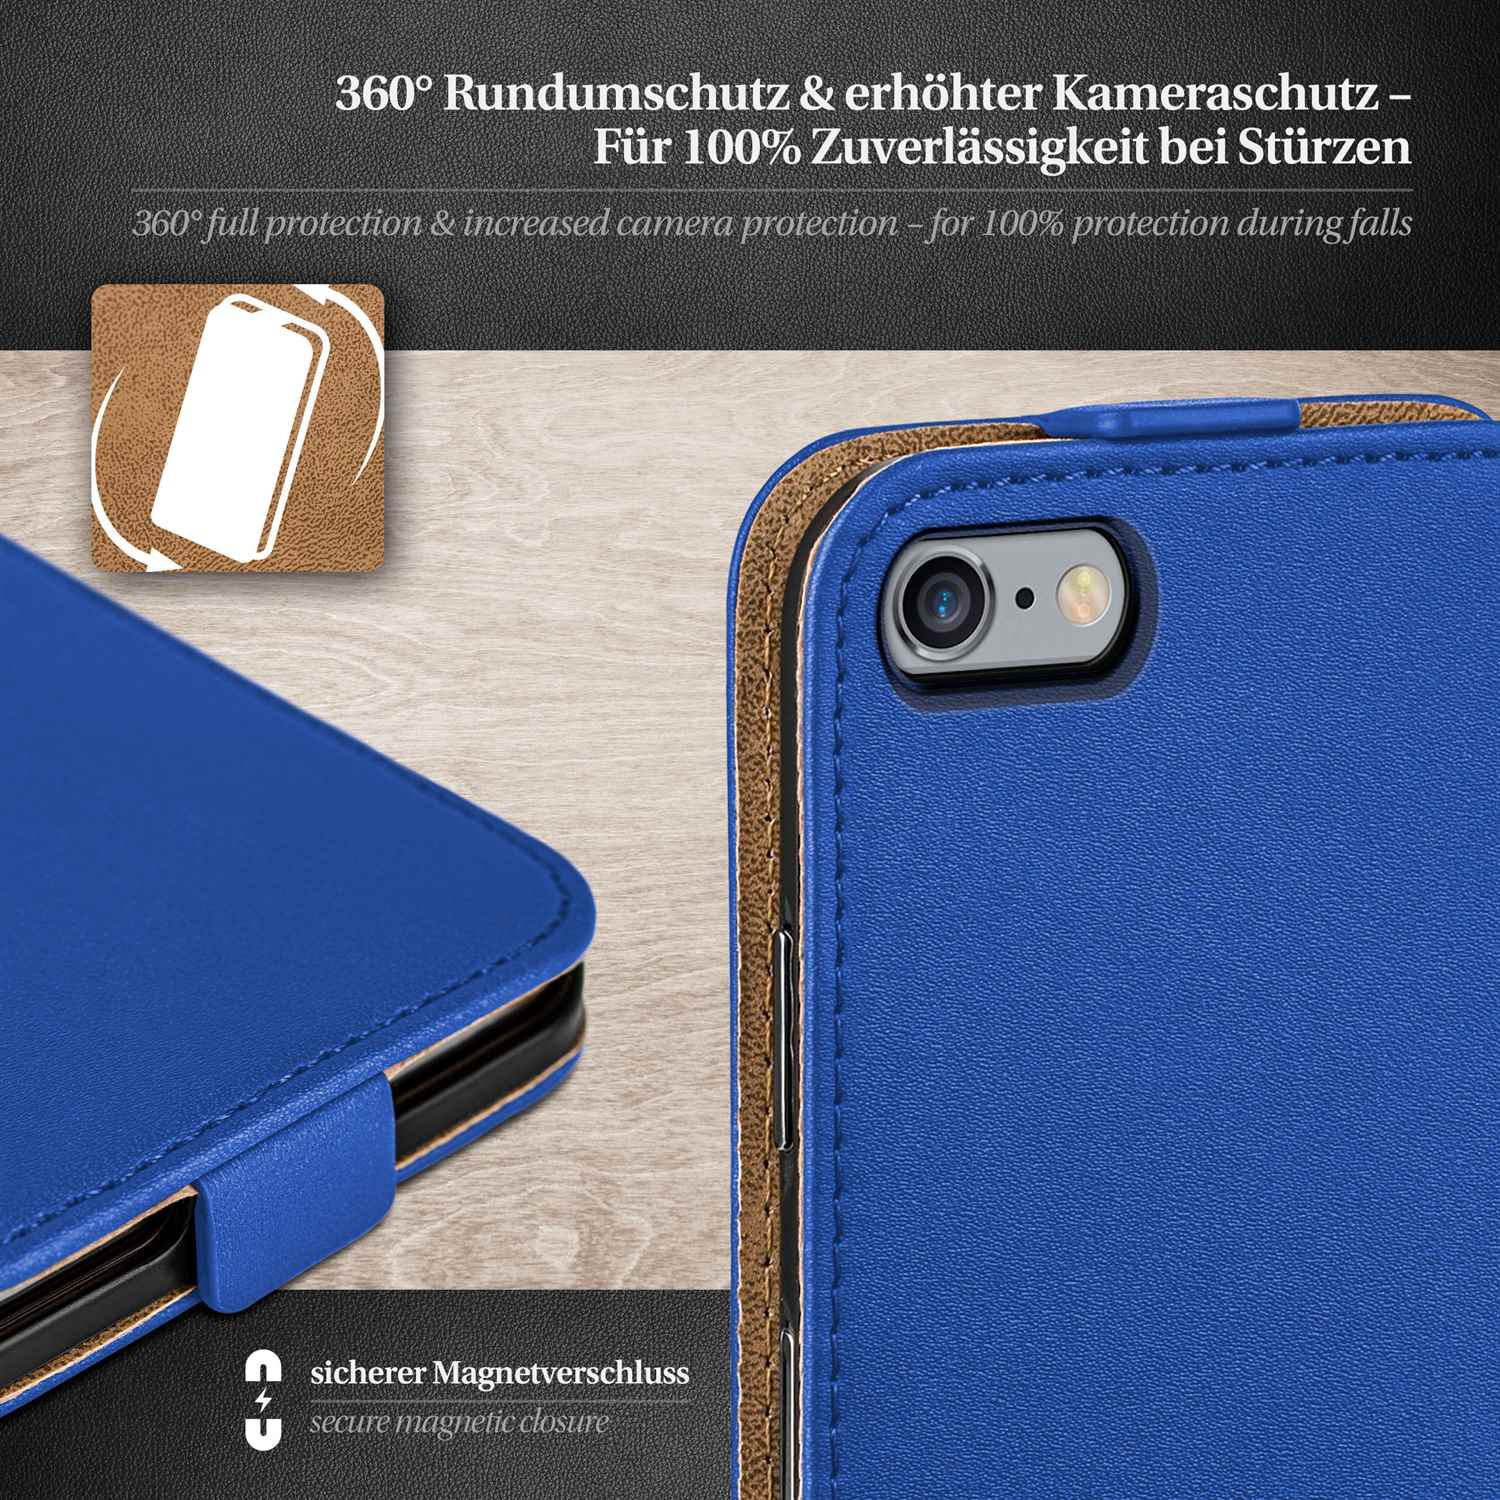 iPhone Cover, Royal-Blue Flip MOEX Plus, 6 Flip Apple, Case,